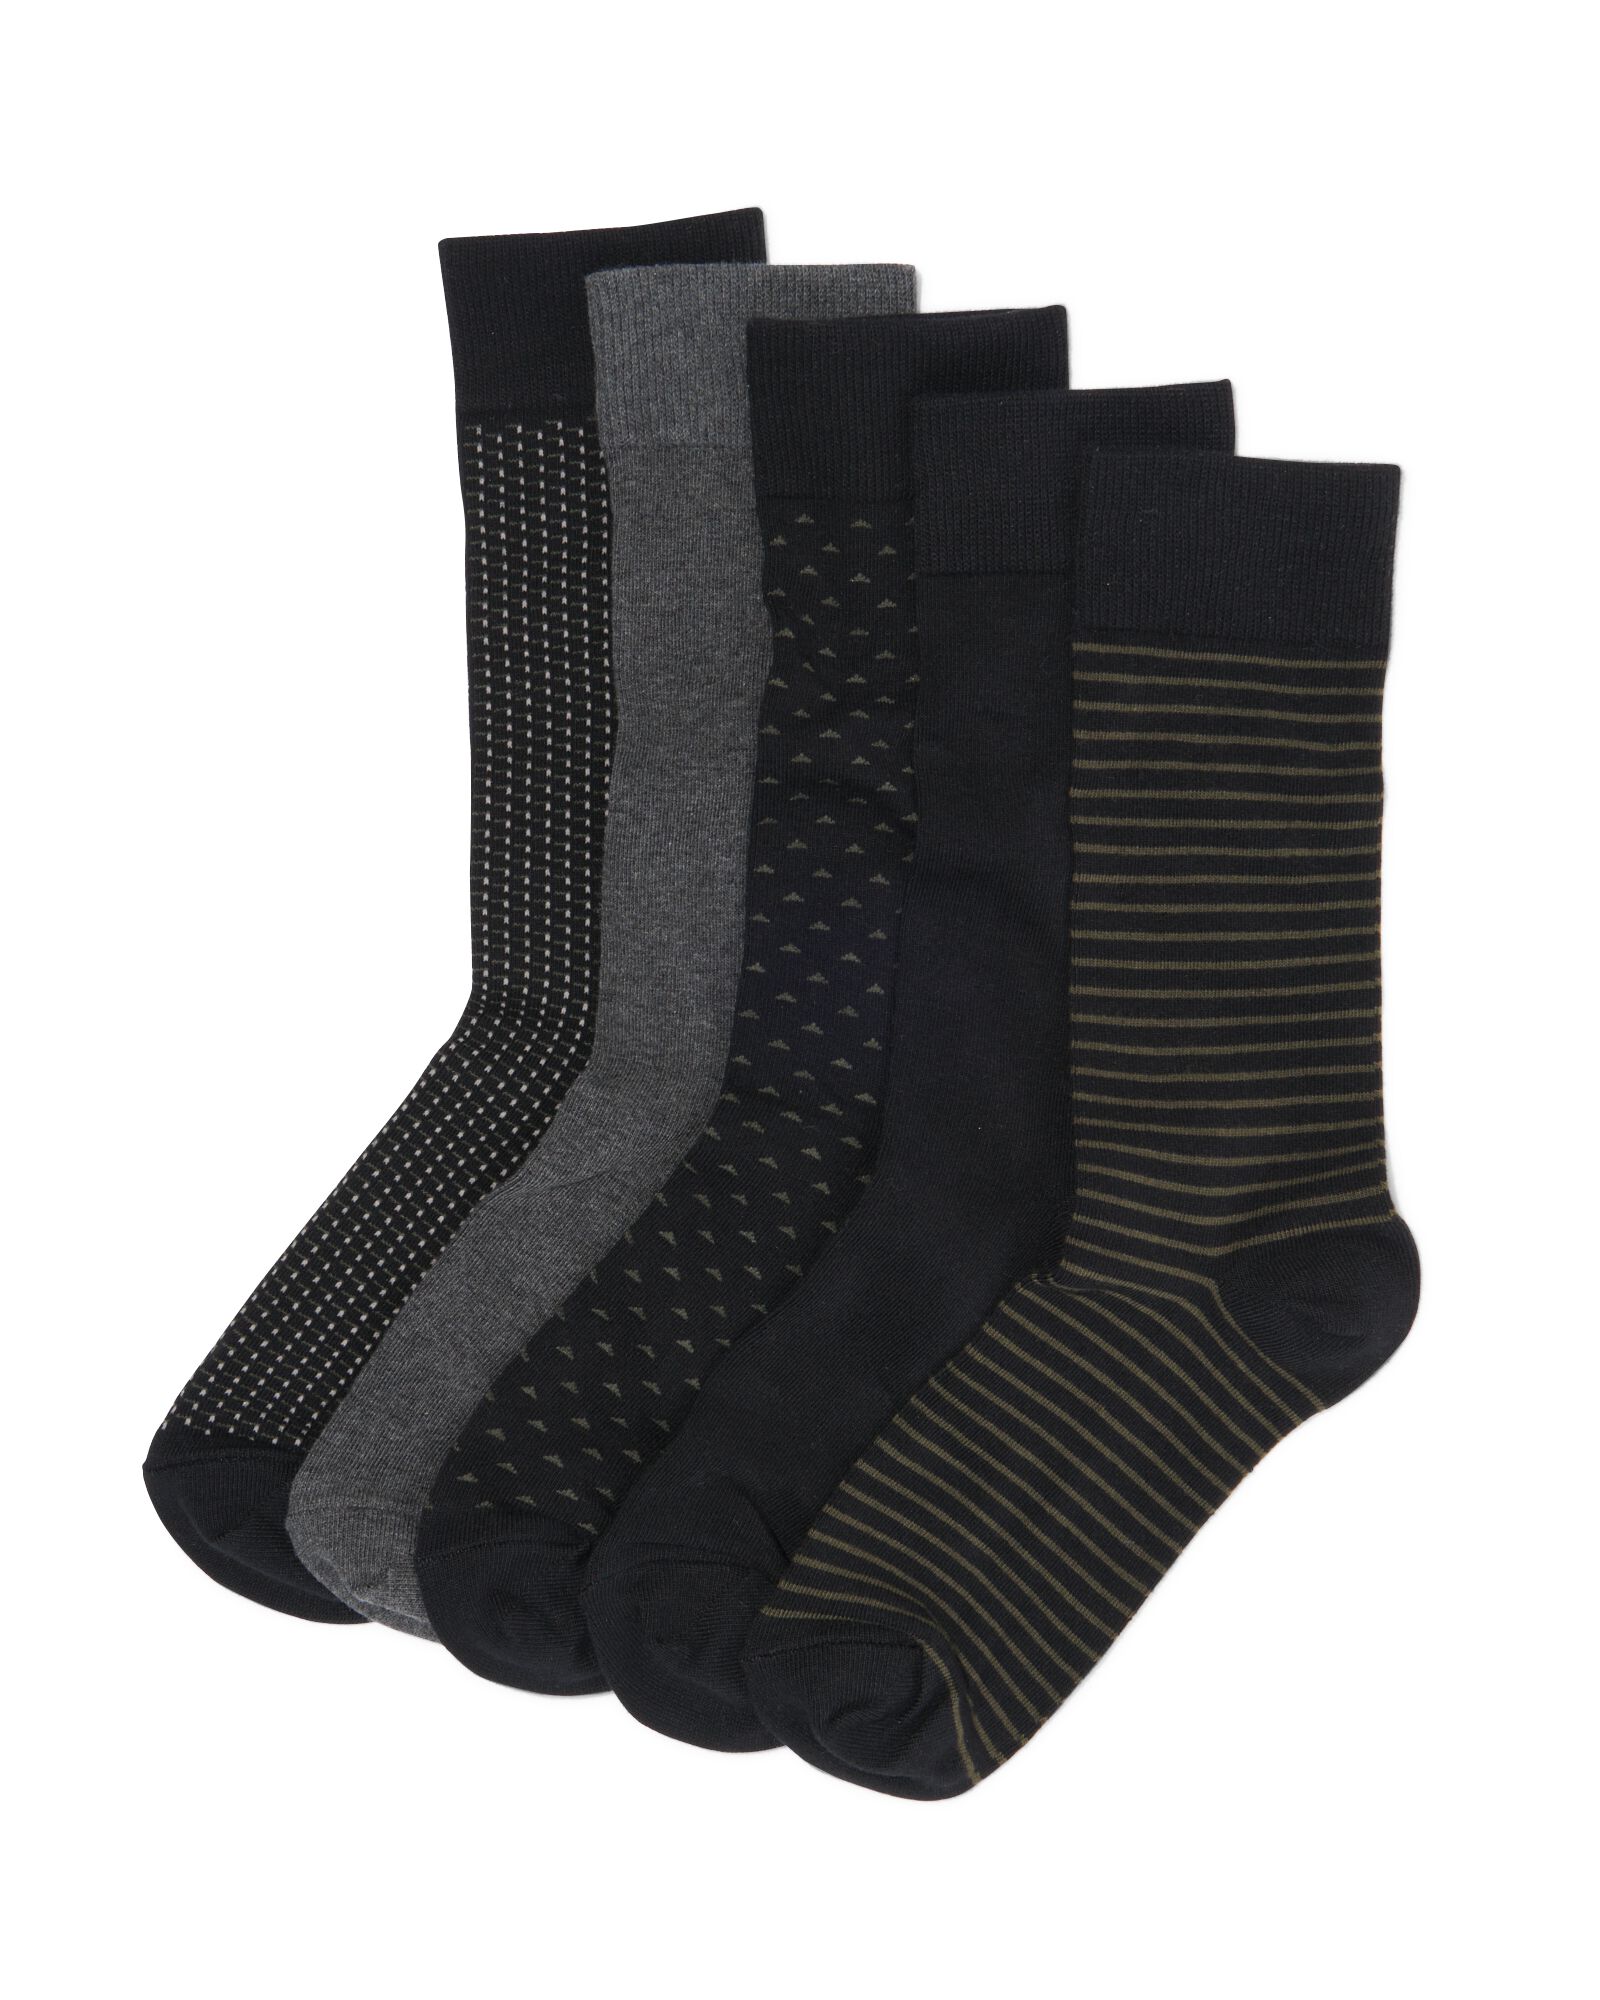 5 paires de chaussettes homme avec coton noir noir - 4130730BLACK - HEMA